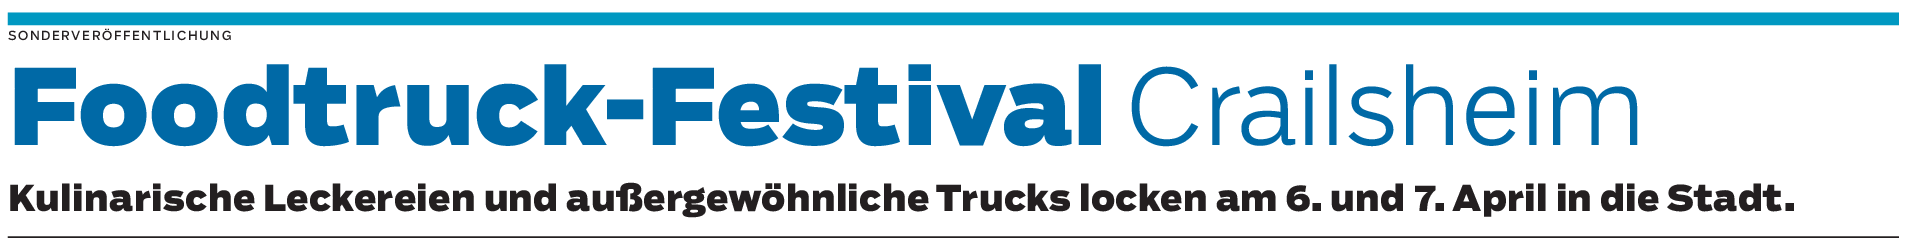 Foodtruck-Festival Crailsheim: Das Event als Highlight